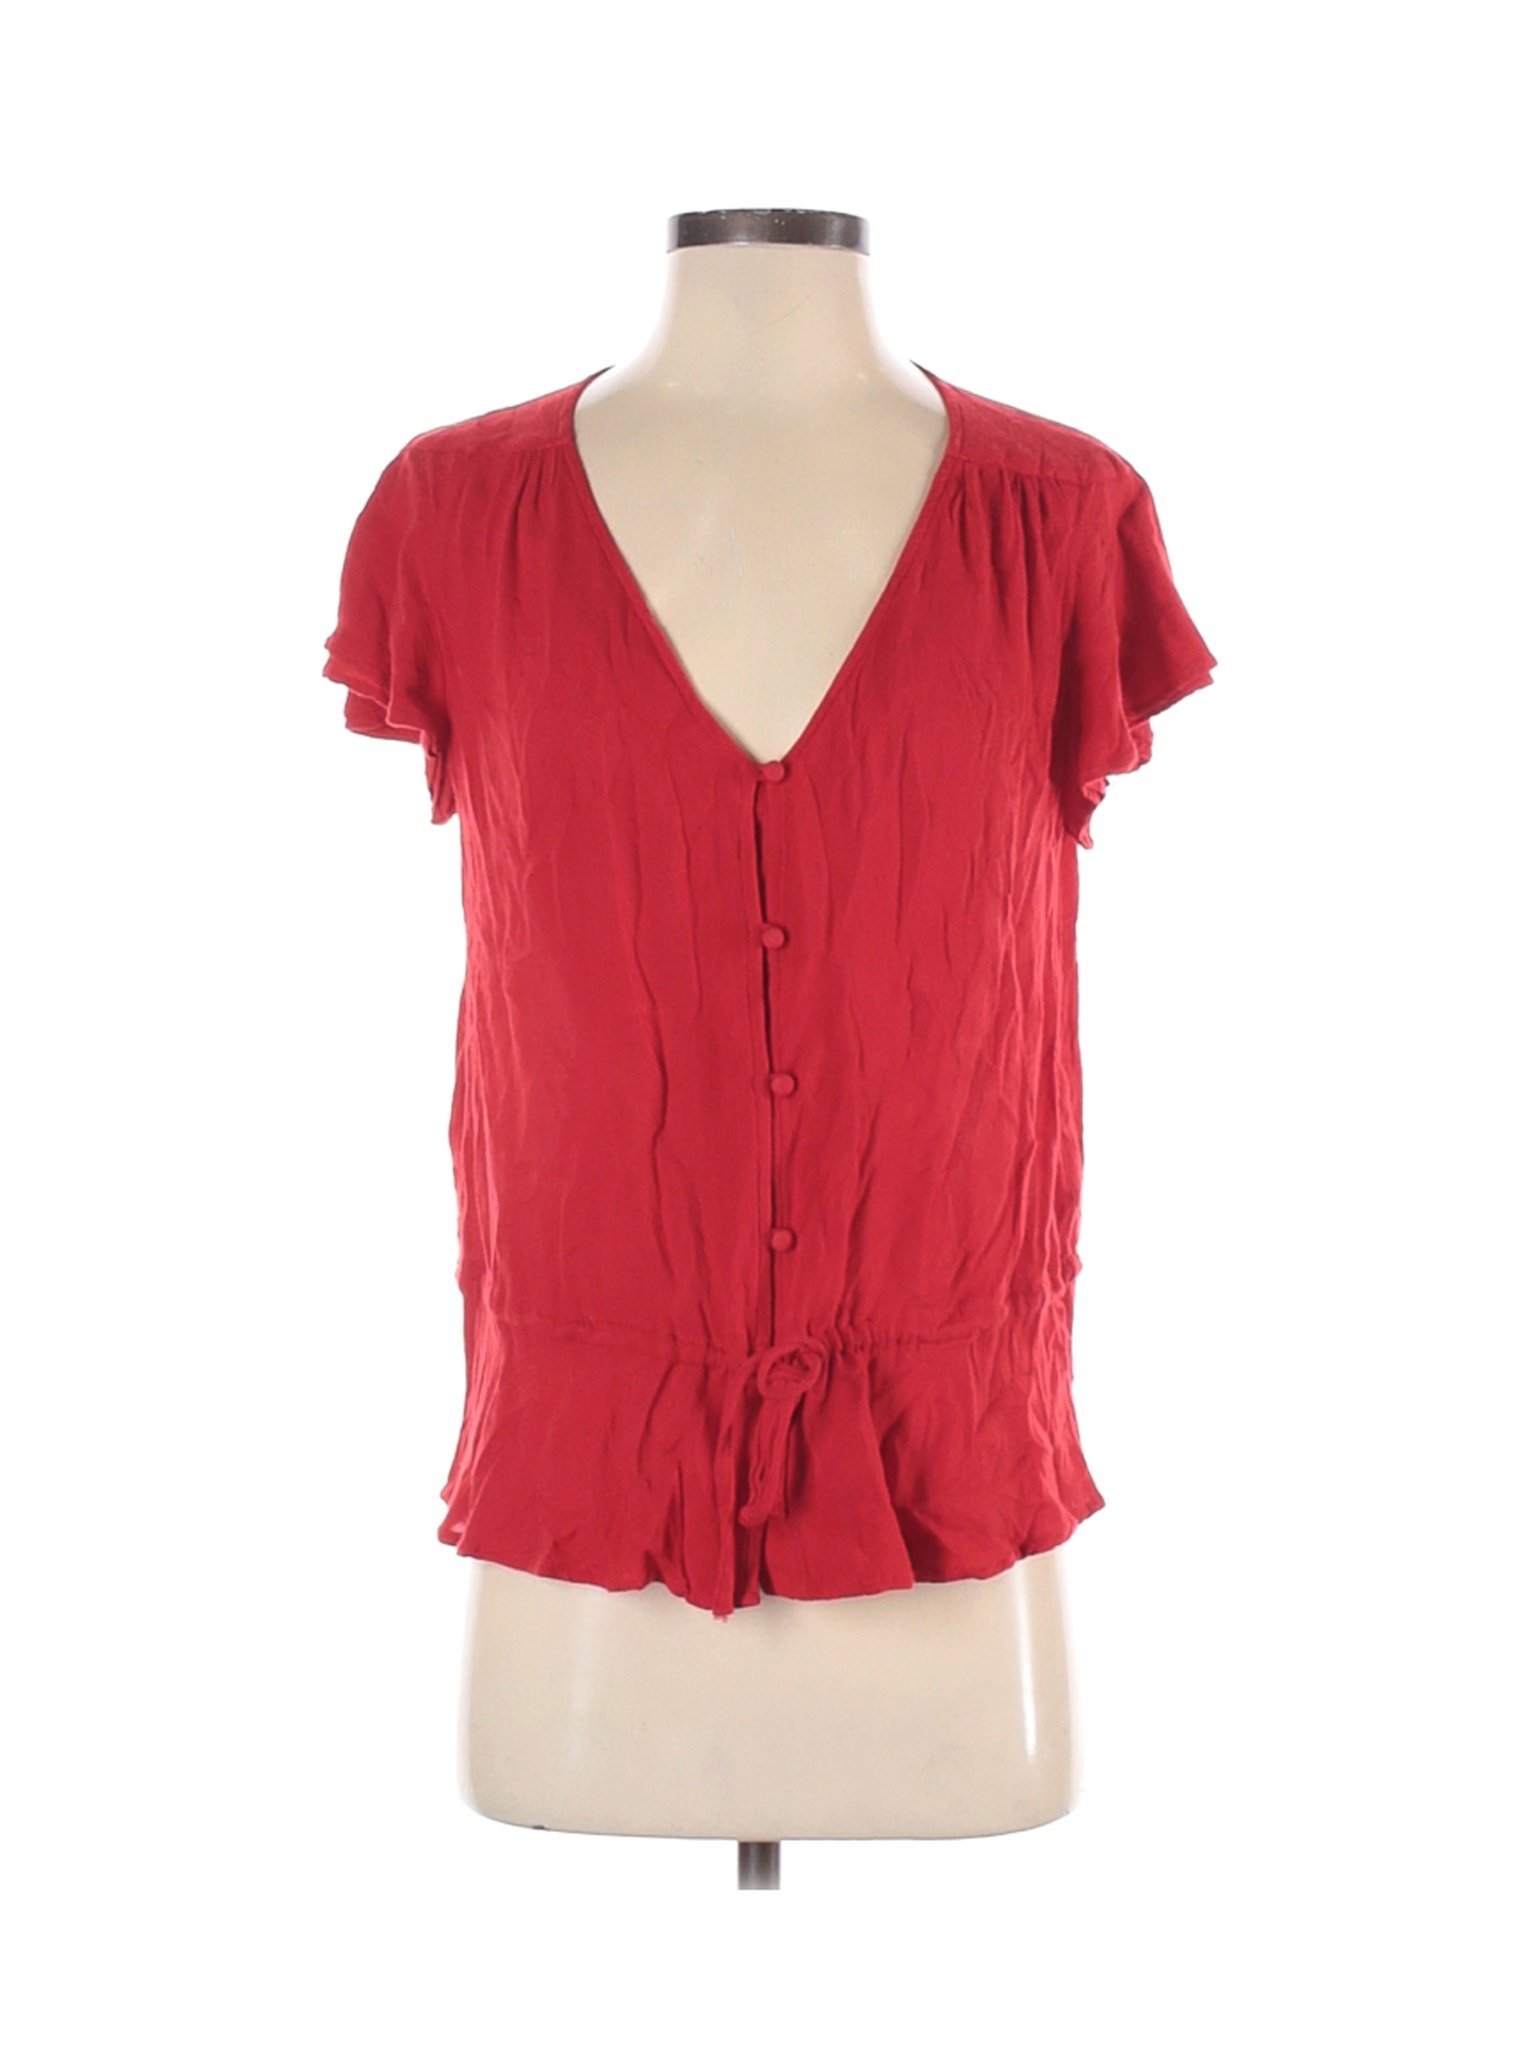 Lucky Brand Women Red Short Sleeve Blouse S | eBay